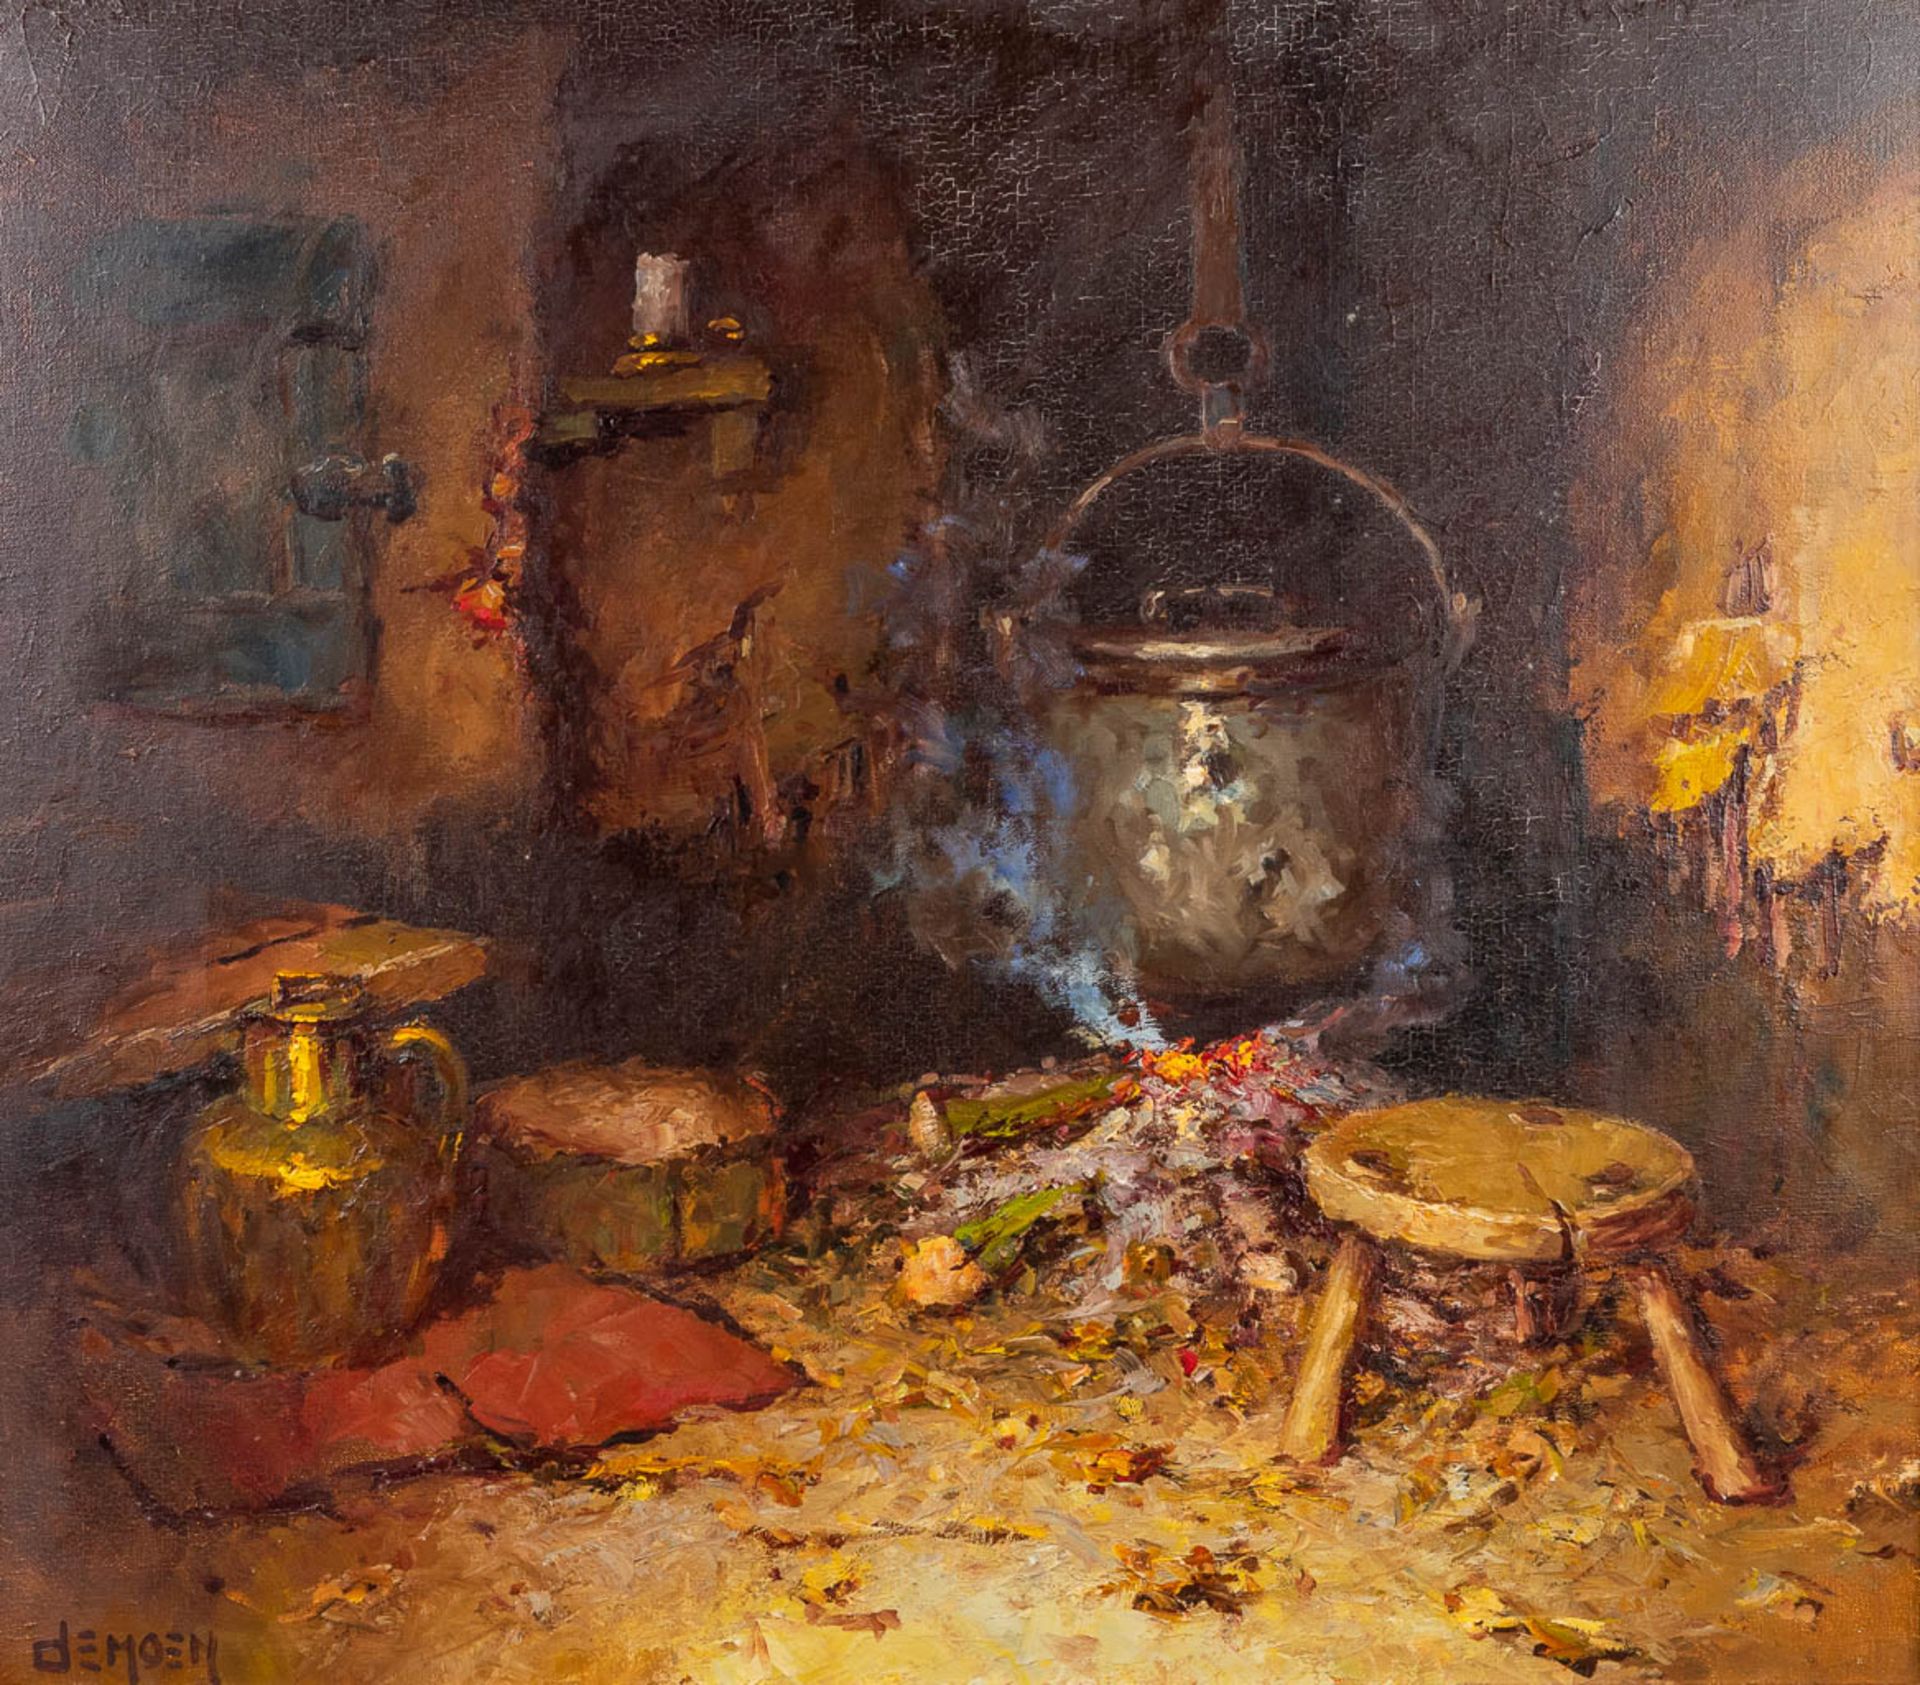 Albert DEMOEN (1916) 'The Fireplace' oil on canvas. (80 x 70cm)